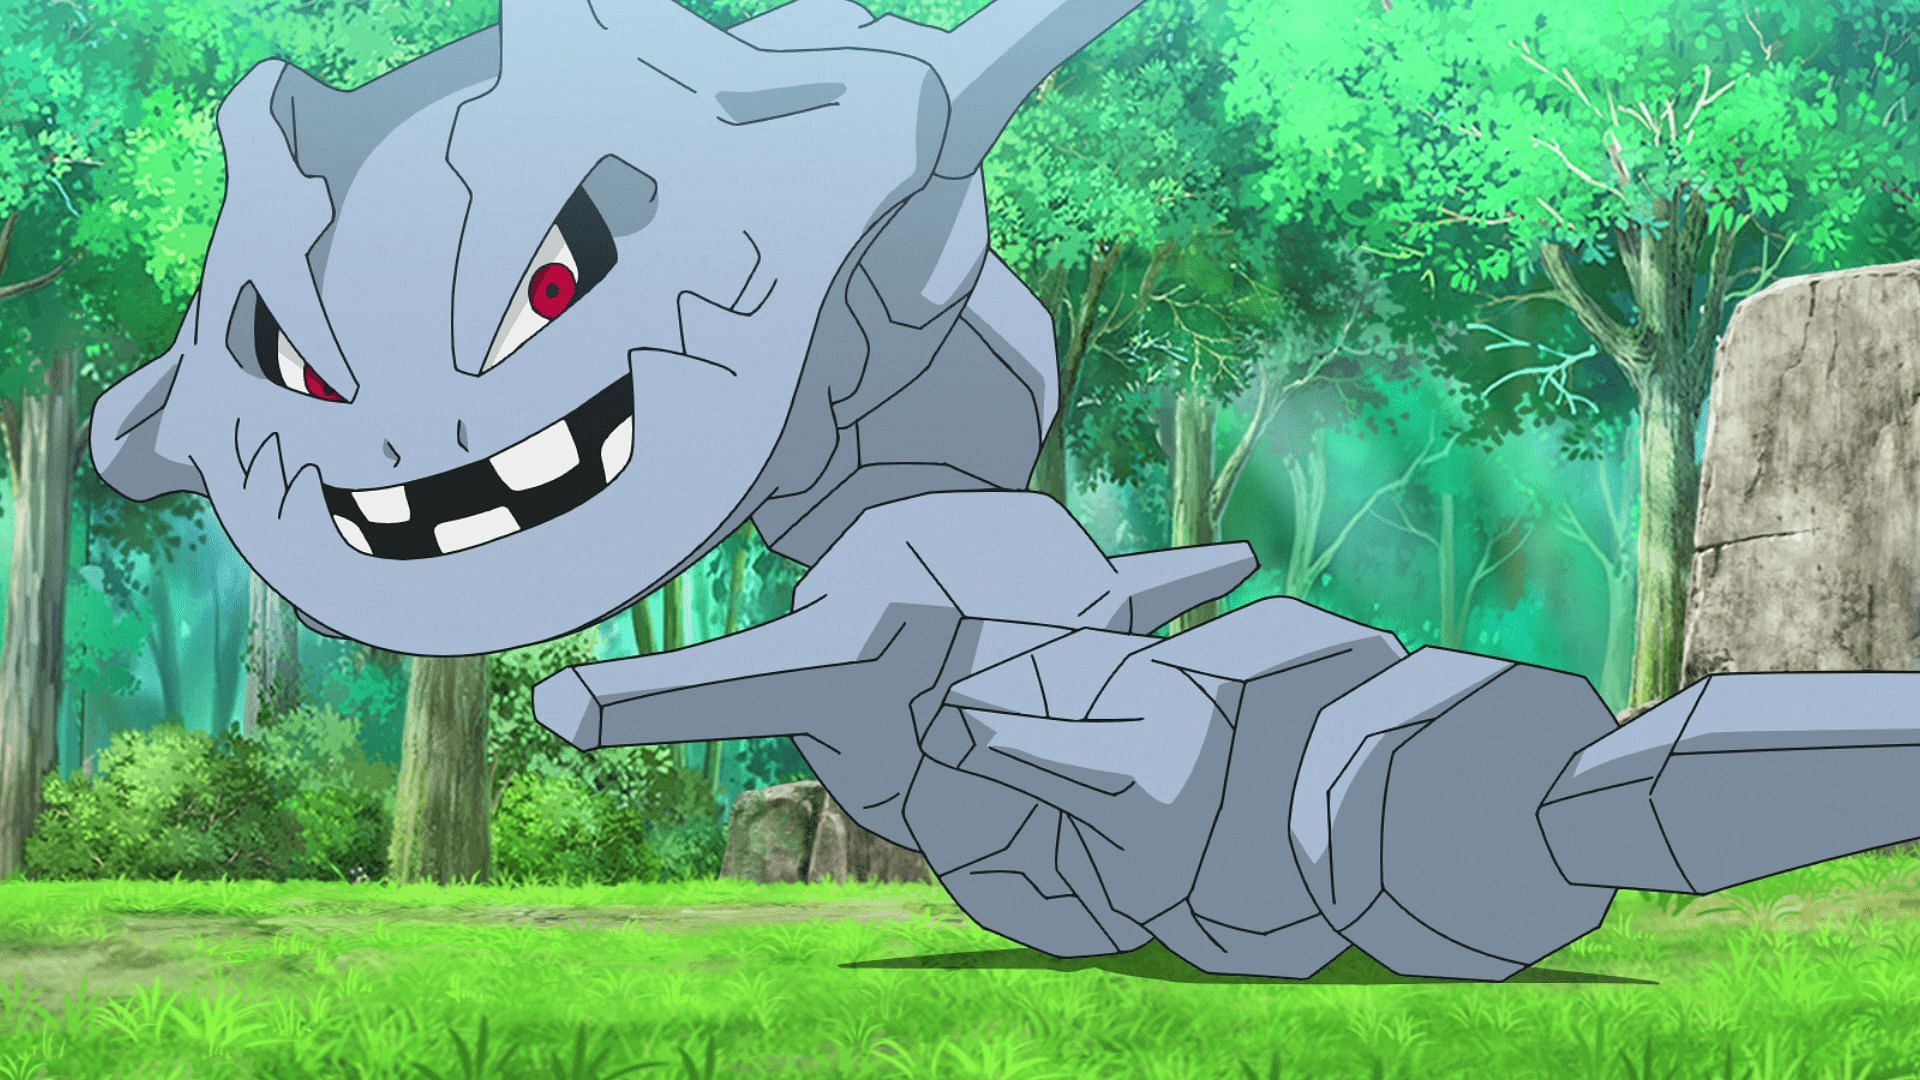 Lo Steelix di Brock ha contribuito a prevenire l'acquisizione della Palestra di Pewter City da parte del Team Rocket in questo episodio dell'anime Pokemon (Immagine tramite The Pokemon Company)